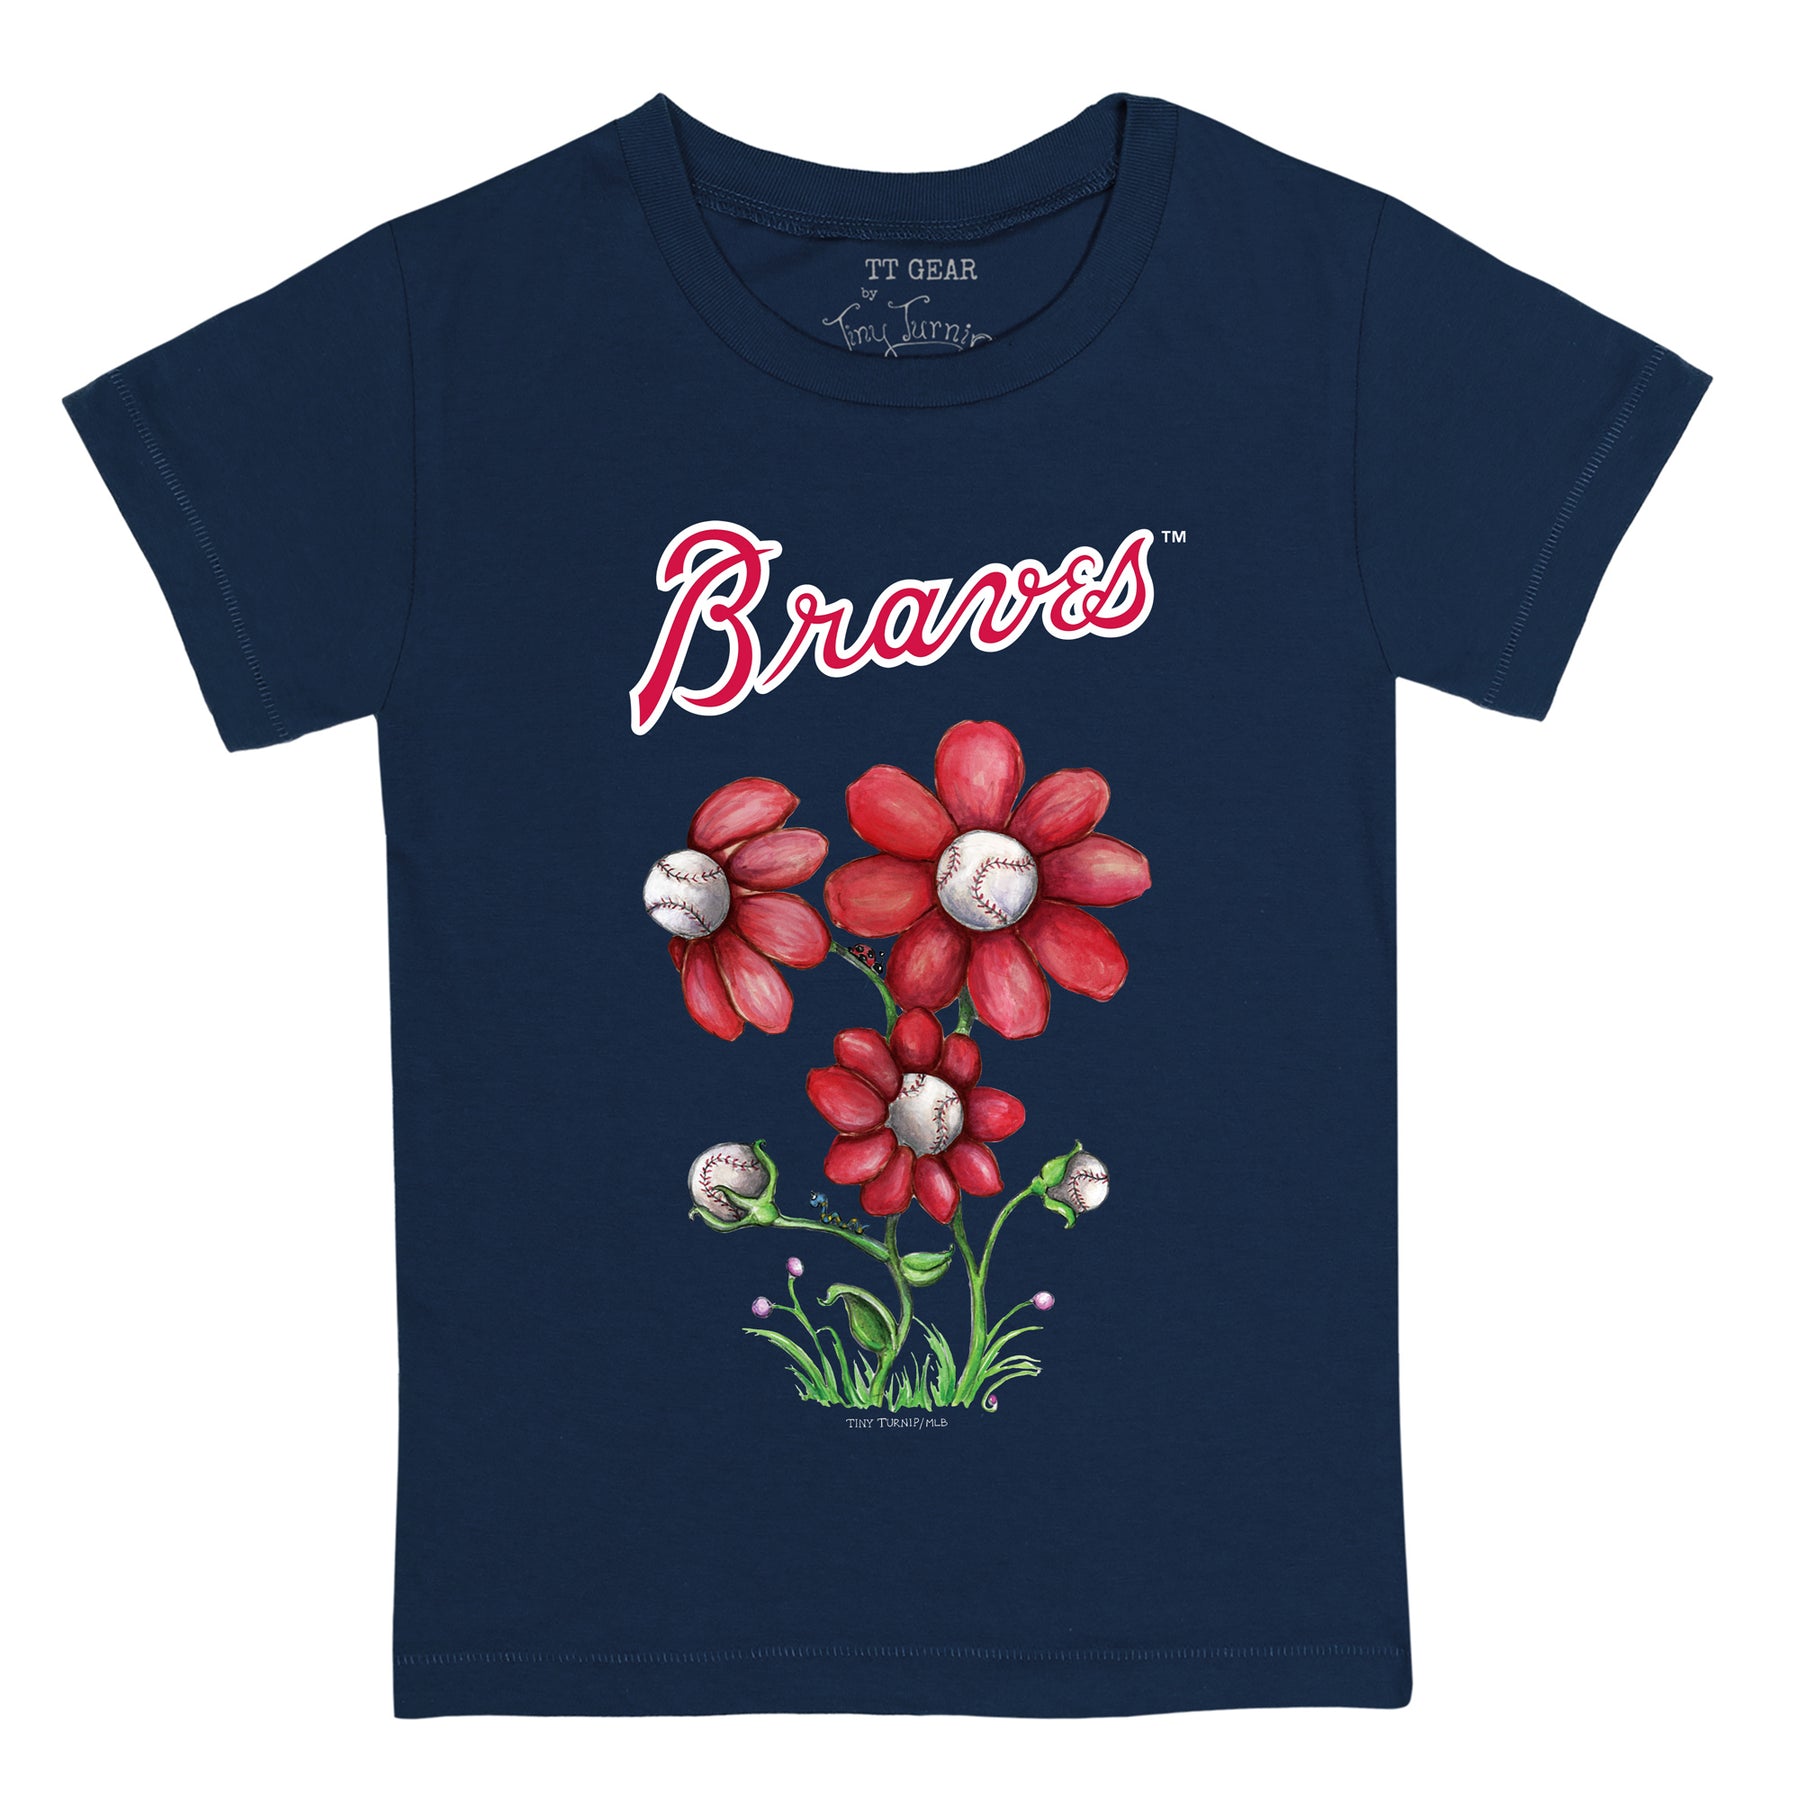 Unisex Children Atlanta Braves MLB Jerseys for sale